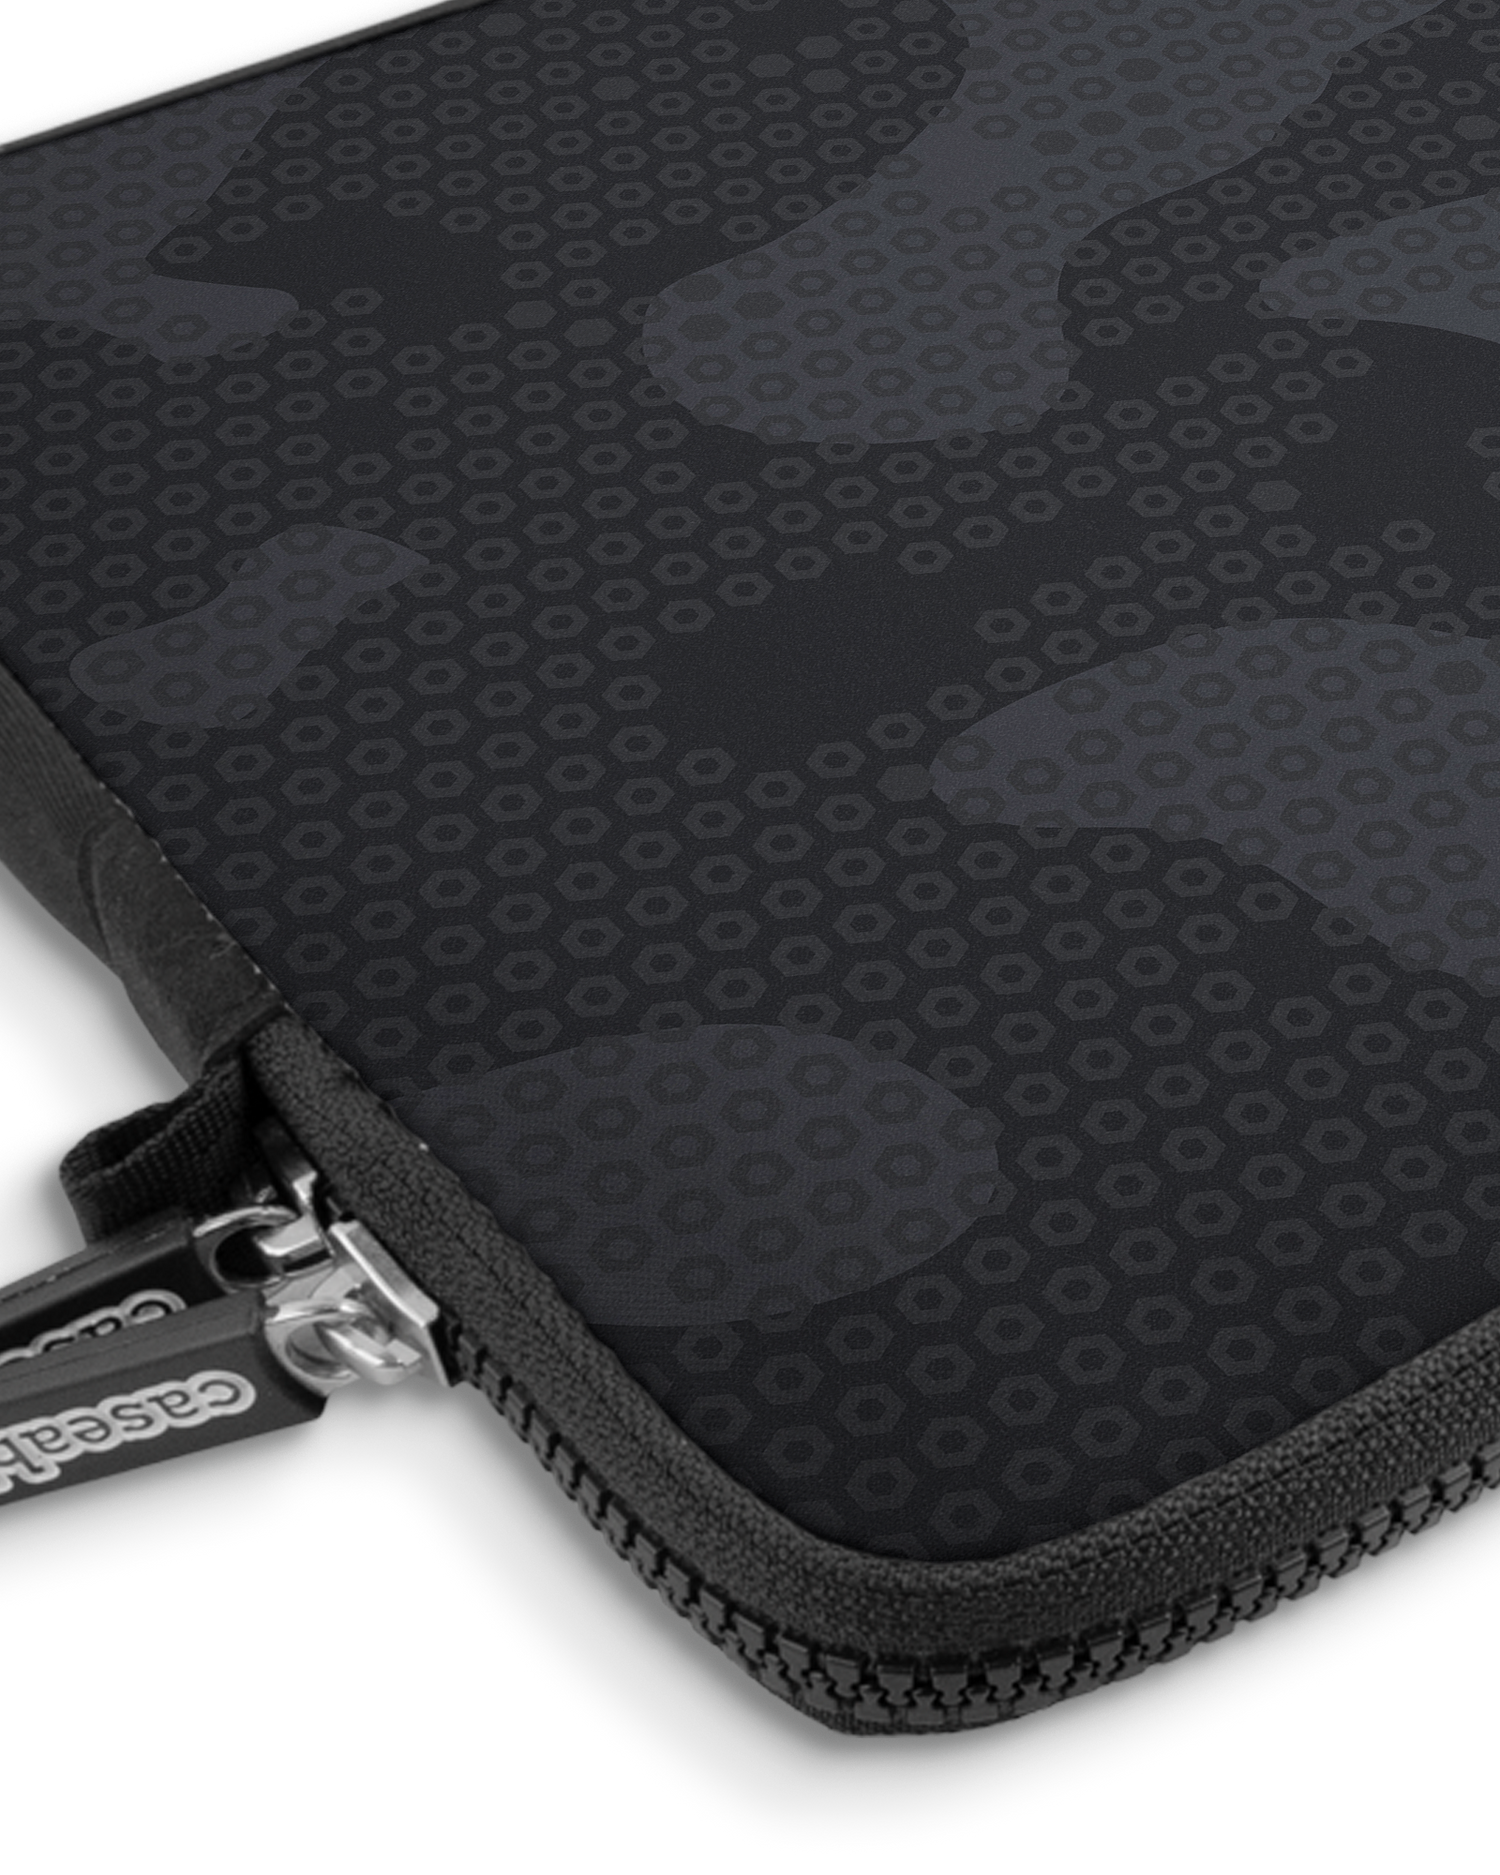 Spec Ops Dark Premium Laptoptasche 13 Zoll mit Gerät im Inneren